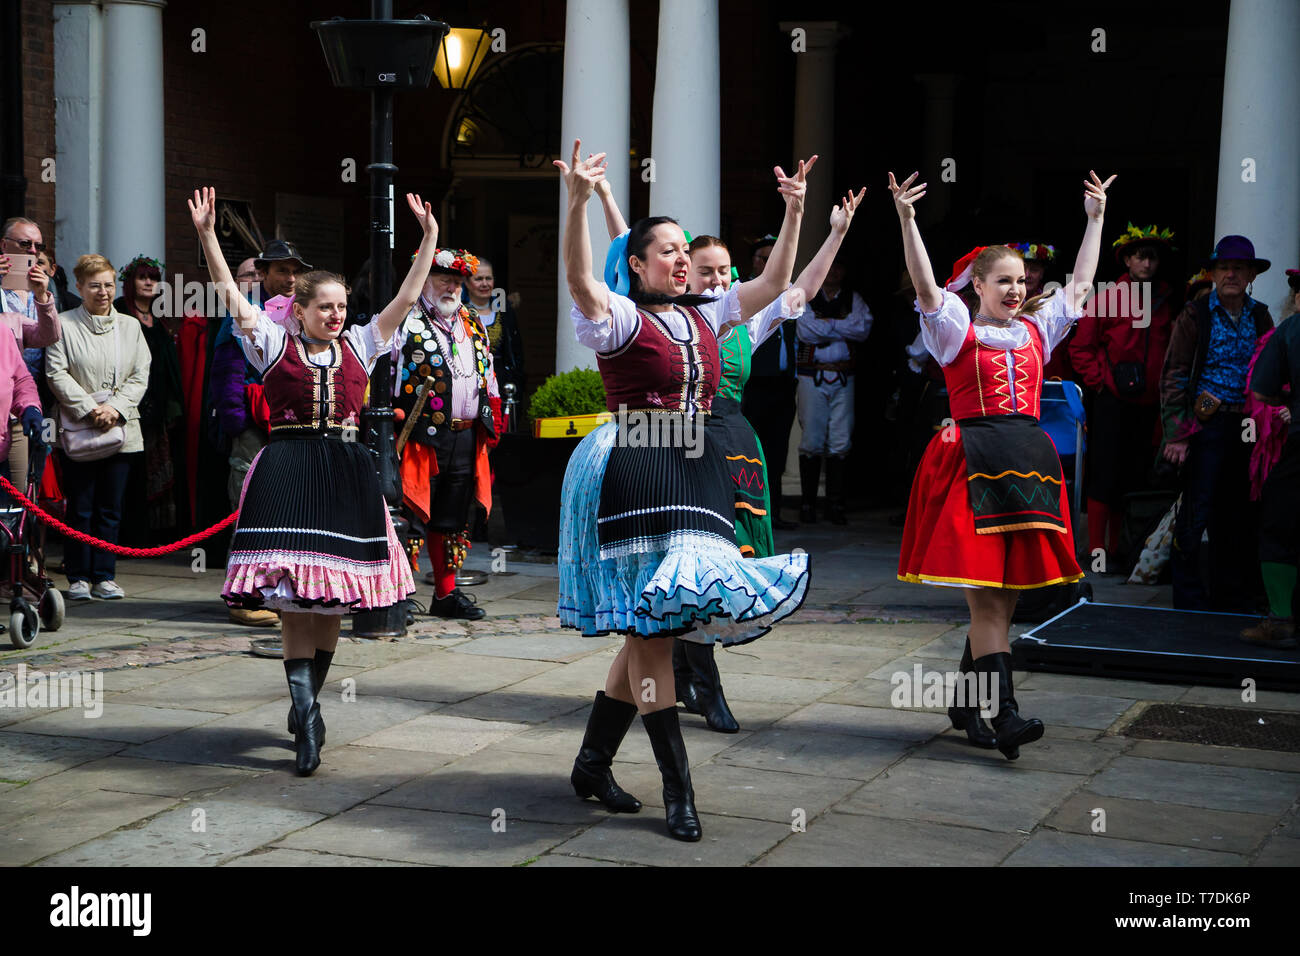 Festival spazia Rochester,Kent, Regno Unito. Il 4 maggio 2019. Ballerini fuori la Guildhall in Rochester in occasione dell'annuale Festival spazia. Foto Stock